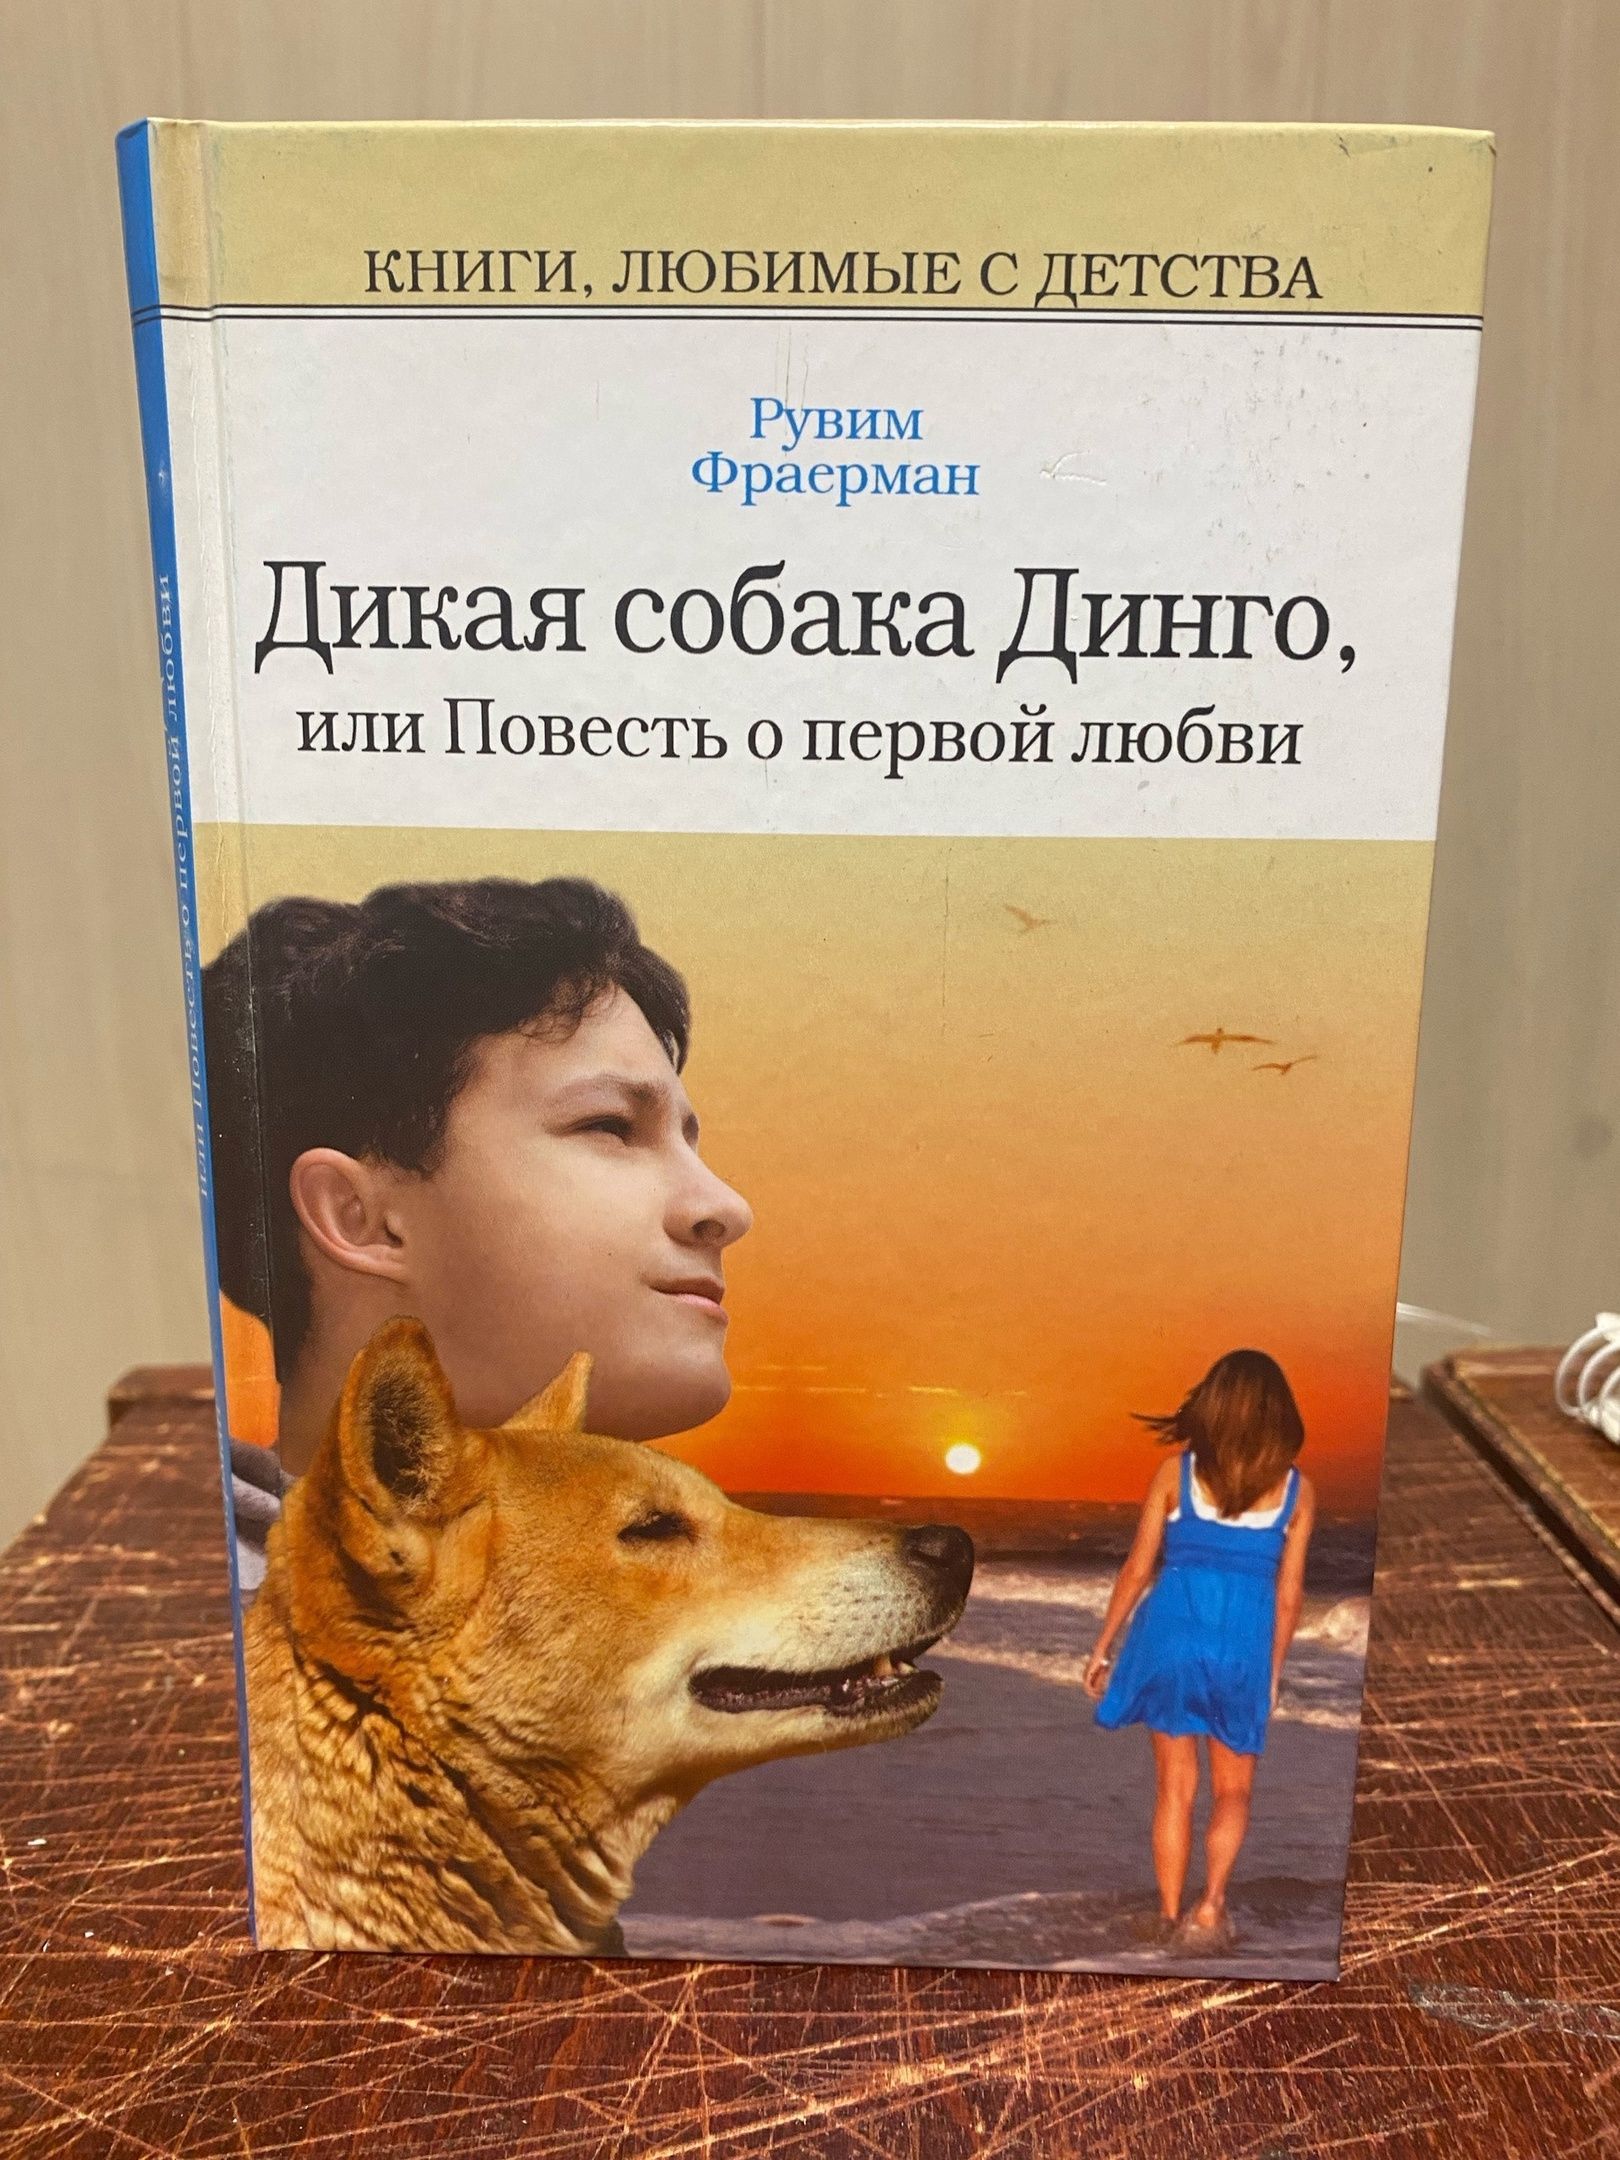 Фраерман дикая собака динго читать краткое содержание